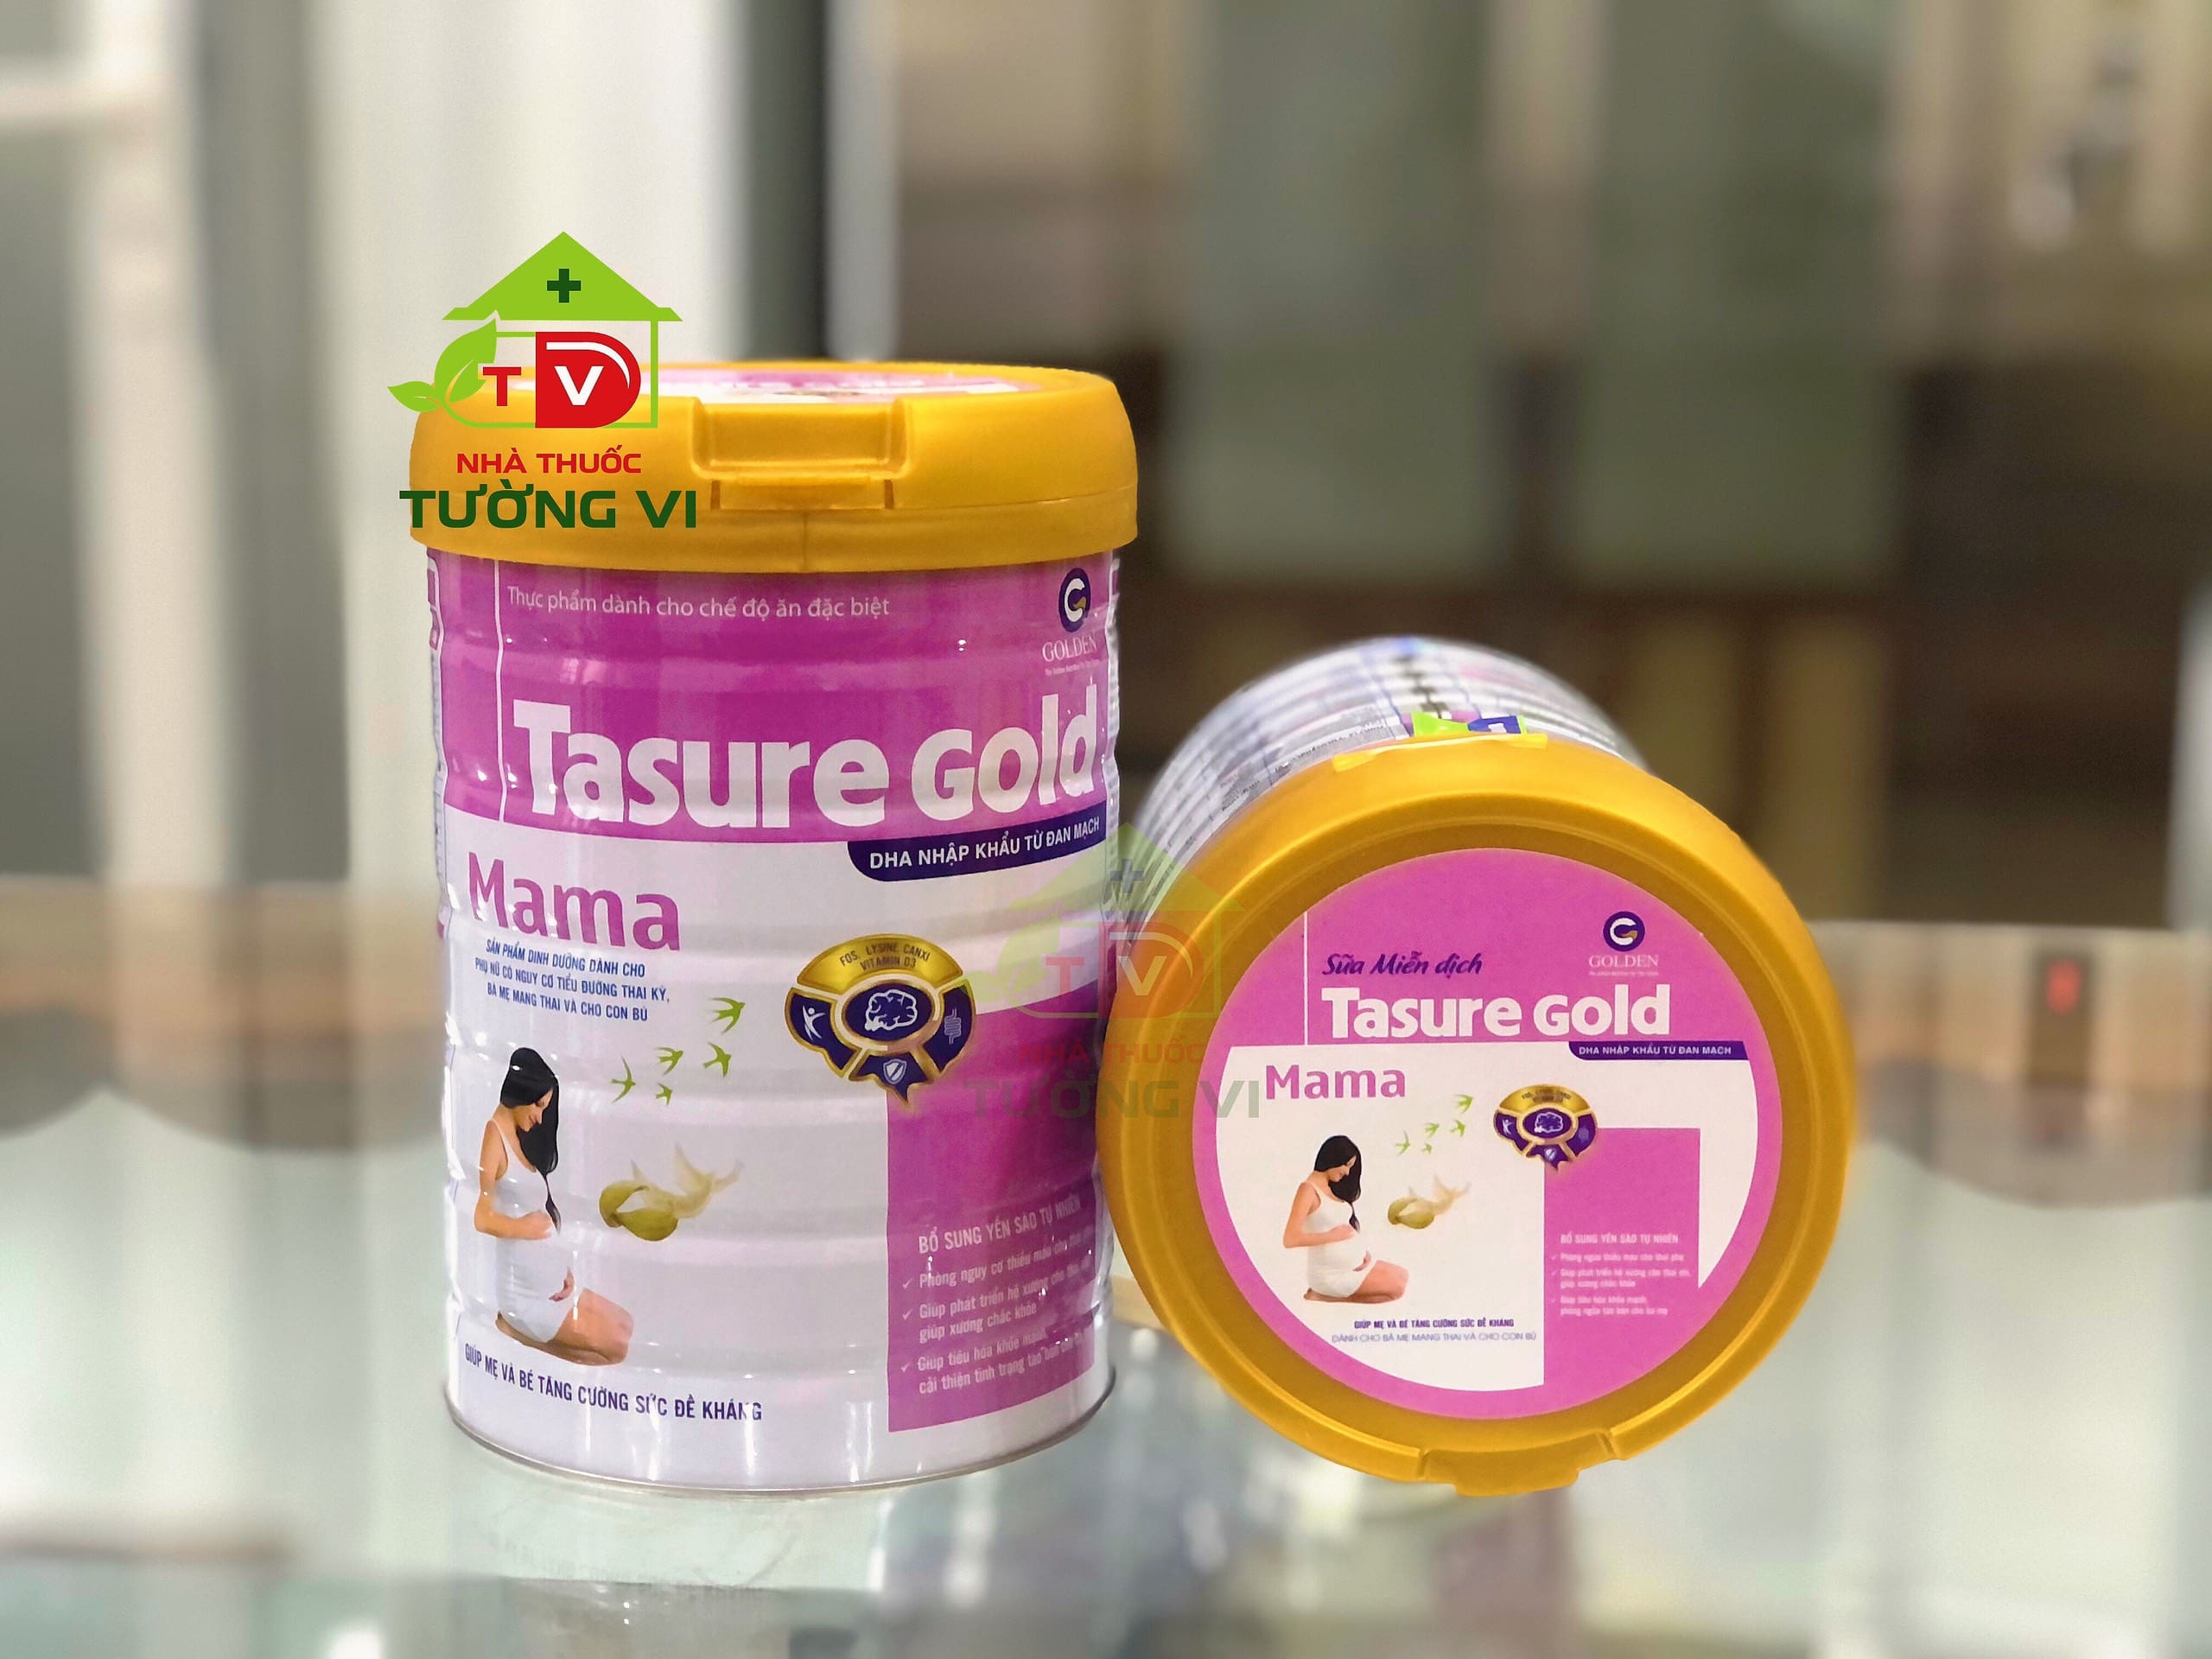 Sữa Tasure Gold Mama – Sản phẩm dinh dưỡng dành cho phụ nữ có nguy cơ tiểu đường thai kỳ, bà mẹ đang mai thai và cho con bú.